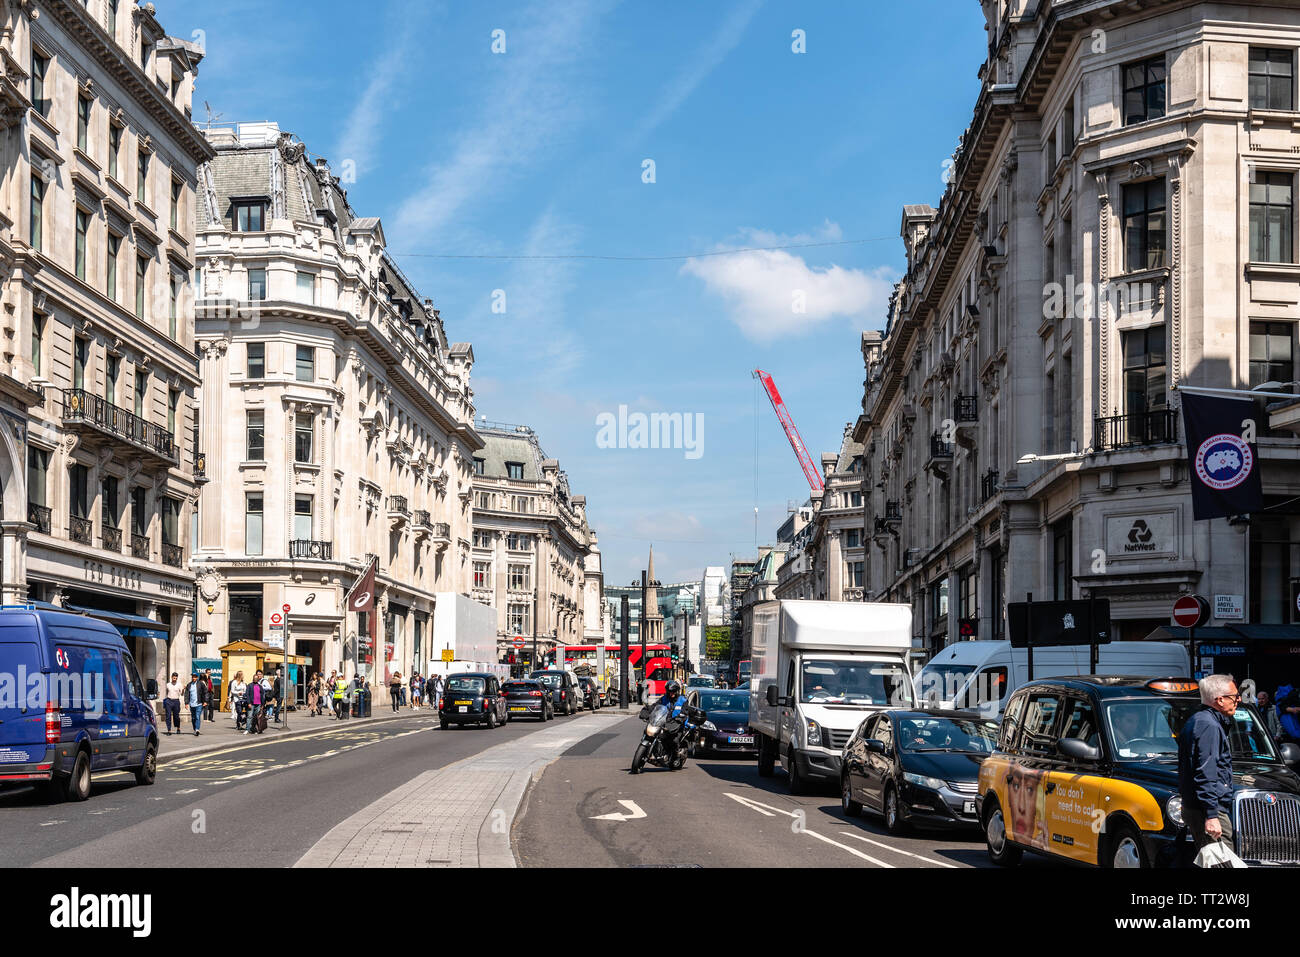 London, Regno Unito - 15 Maggio 2019: trafficata London street scene su Regent St. Regent Street è una delle strade principali nel West End di Londra famosa per la lu Foto Stock